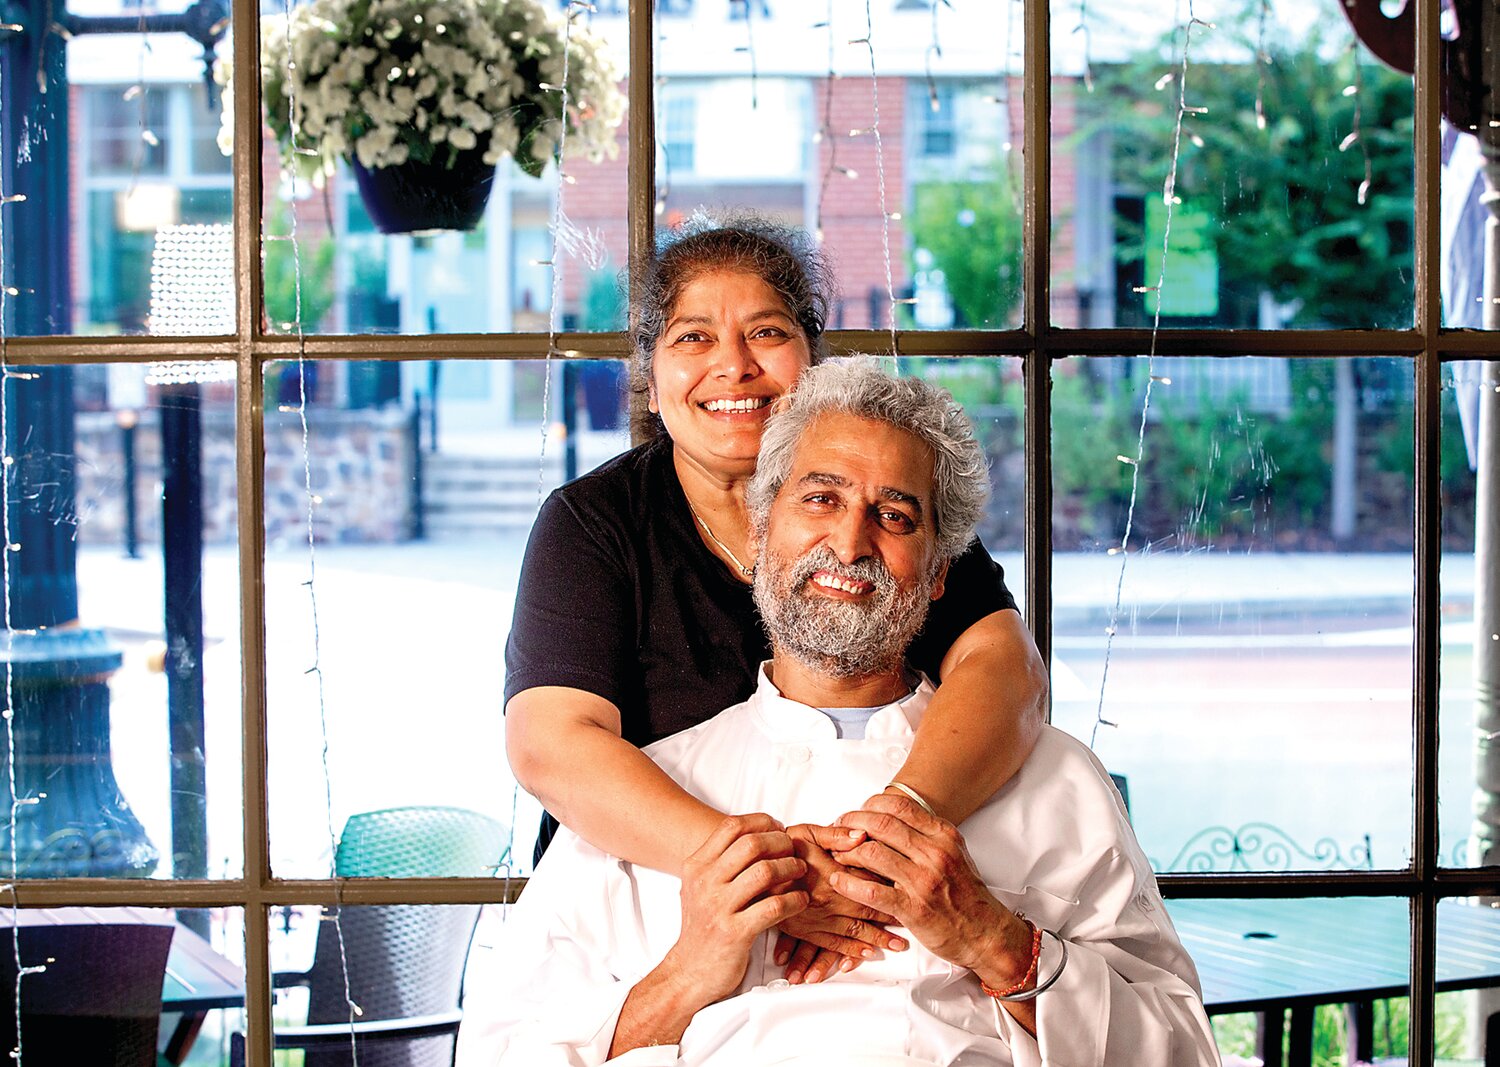 Guru’s Indian Cuisine owners Ashni “Baba” Kumar and Priya Guru.